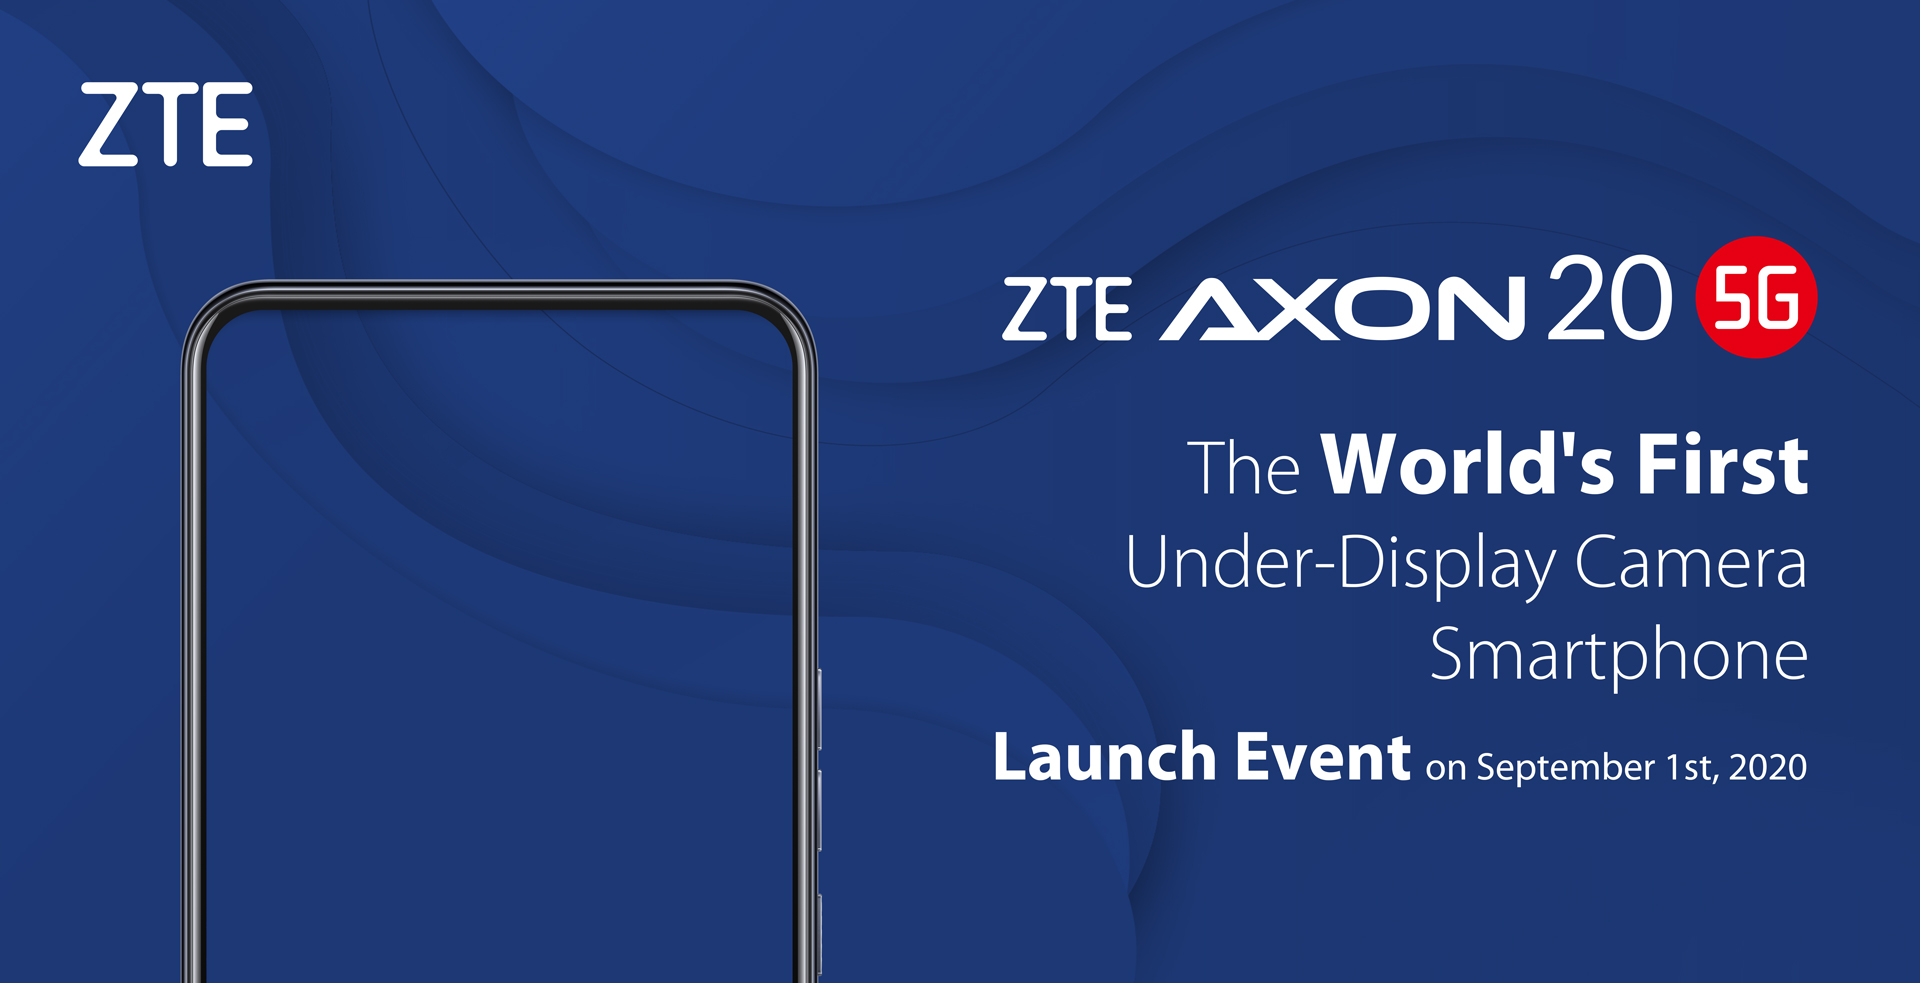 ZTE เตรียมเปิดตัวสมาร์ทโฟน 5G รุ่นแรกของโลกที่มาพร้อมกล้องใต้จอวันที่ 1 กันยายน 2563 นี้